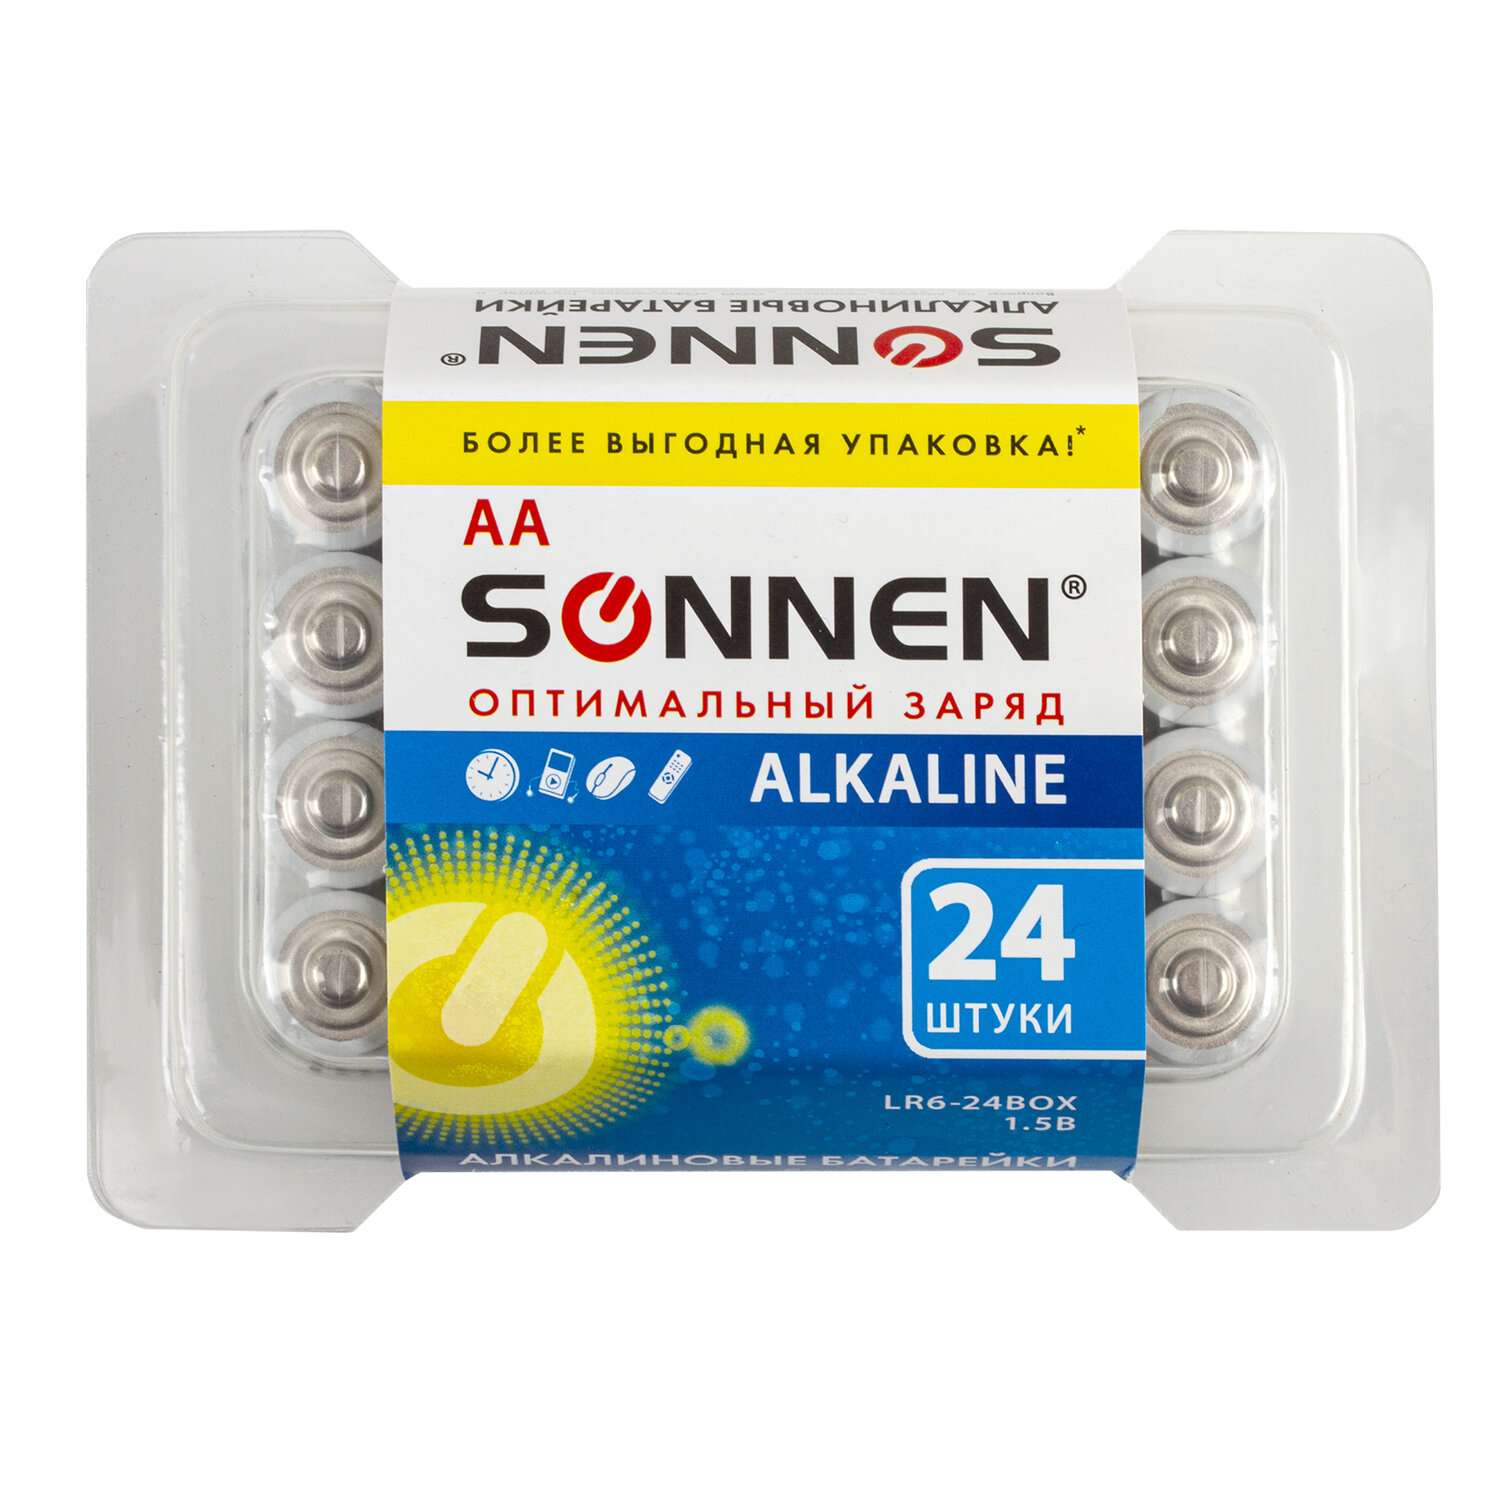 Батарейки Sonnen пальчиковые АА алкалиновые 24 штуки для пульта часов весов фонарика - фото 5